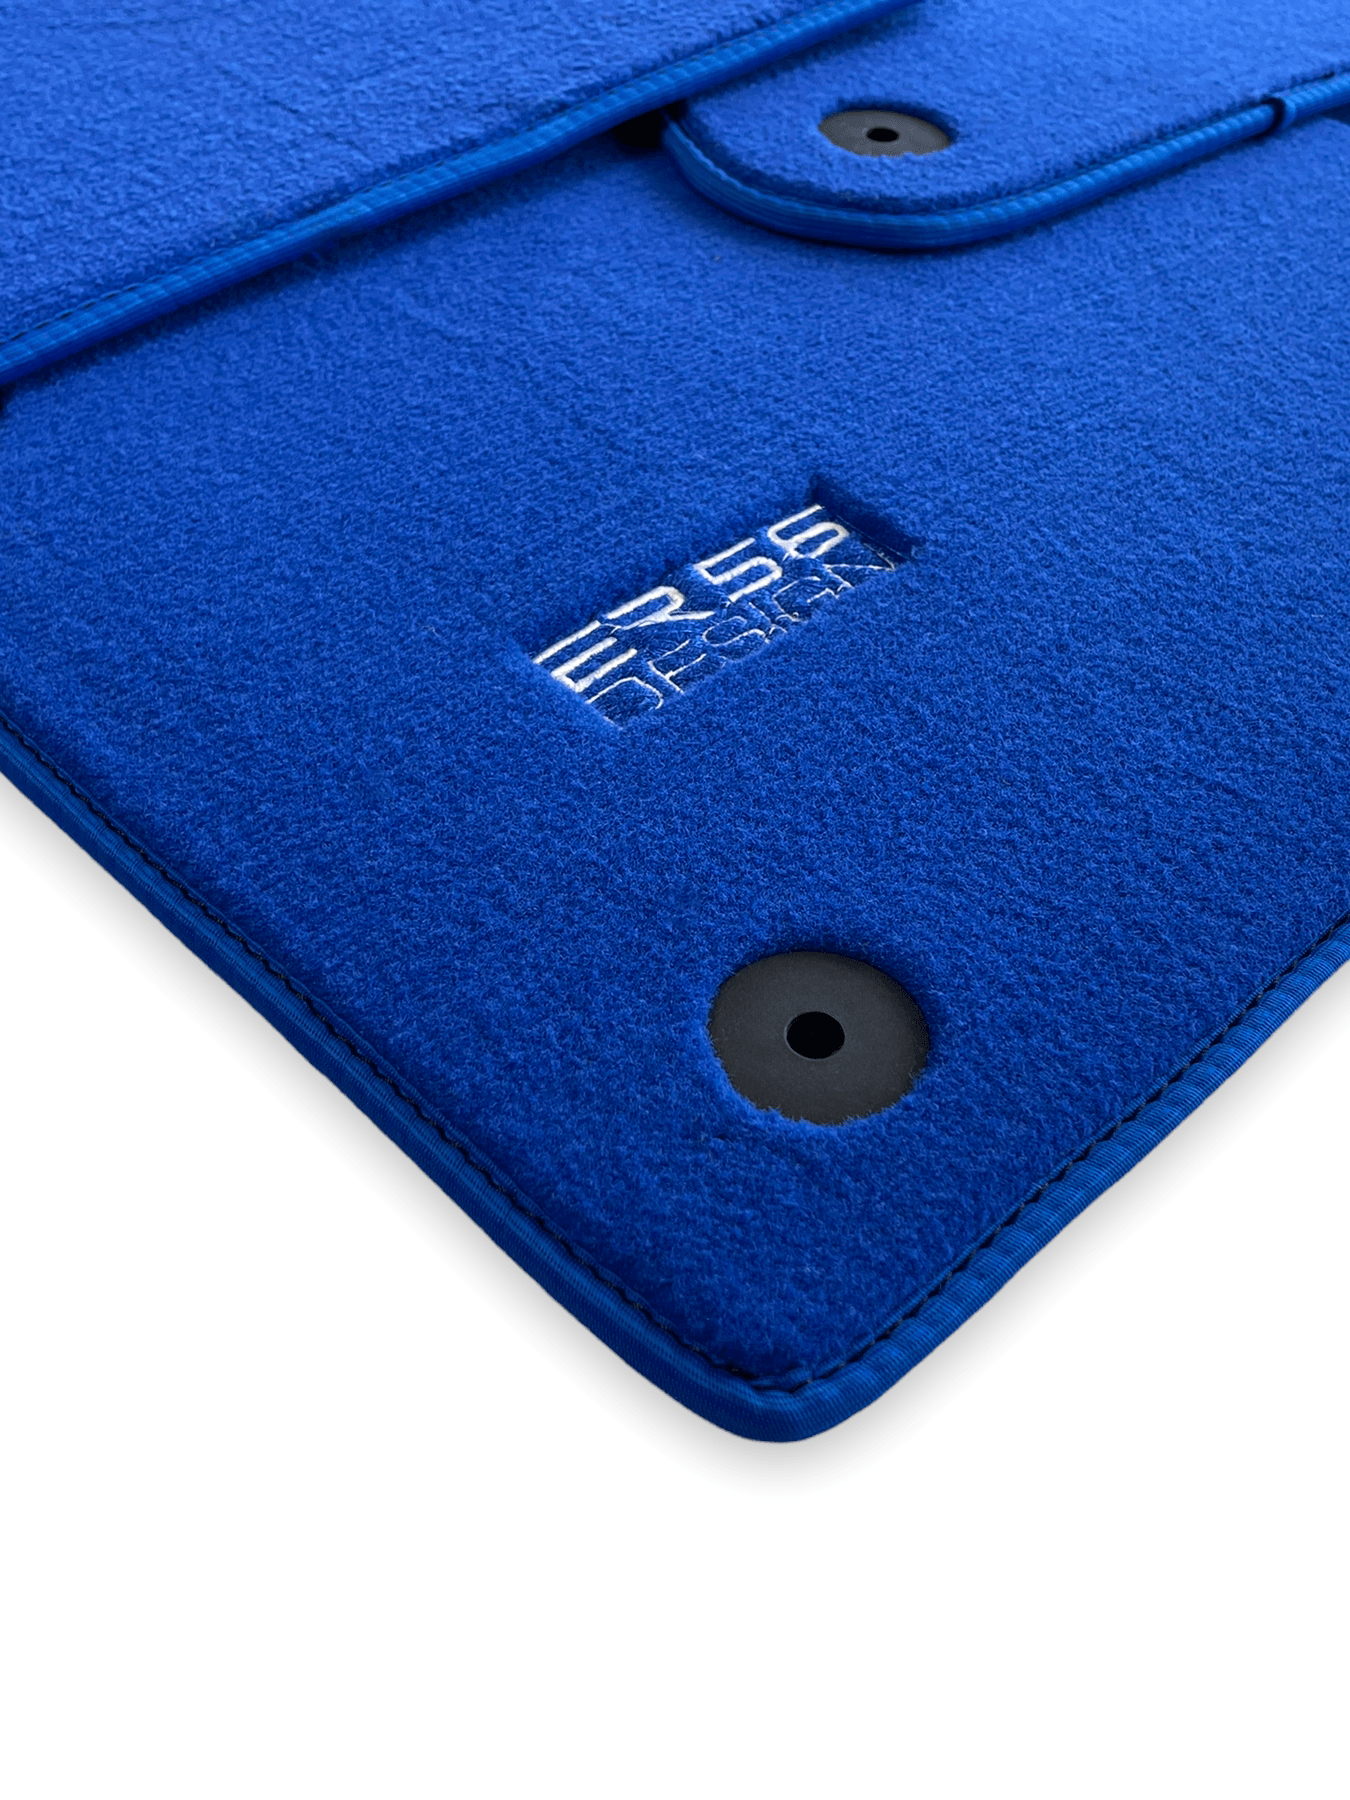 Blue Floor Mats for Audi A4 - B9 Avant (2018-2019) | ER56 Design